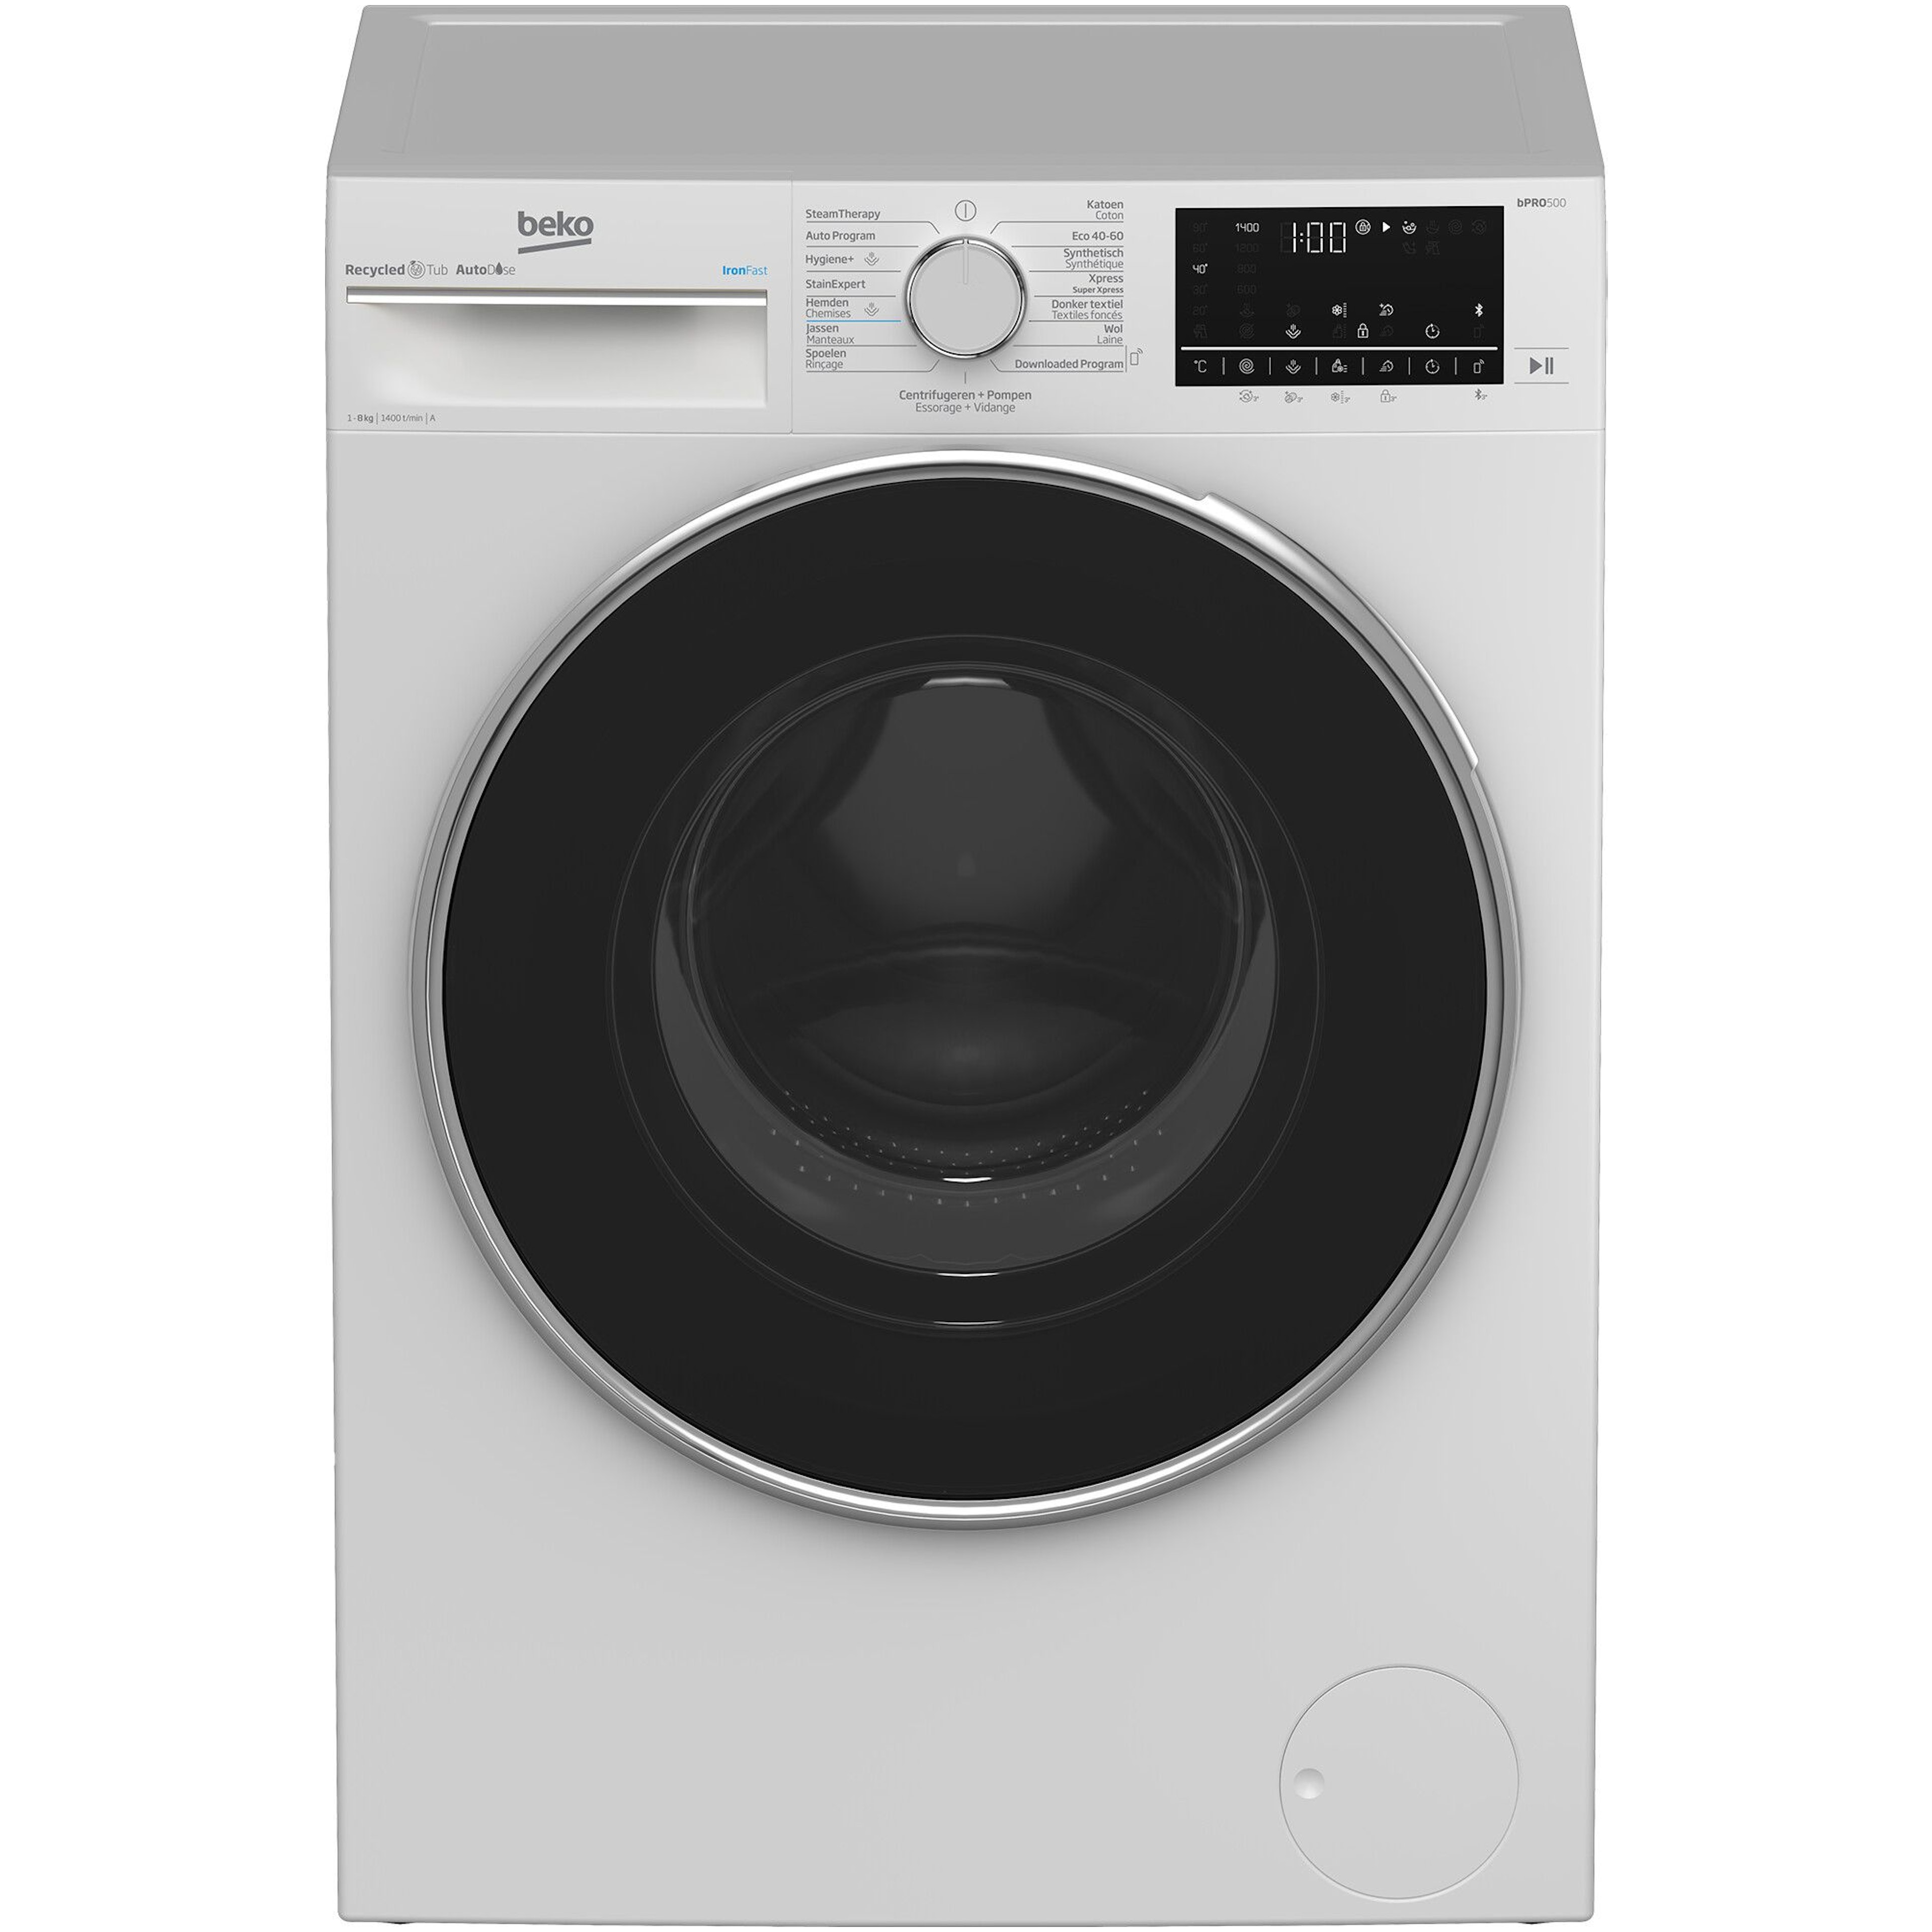 Op grote schaal Verenigde Staten van Amerika Moet Beko wasmachine kopen? - Voordelig bij Bemmel & Kroon!